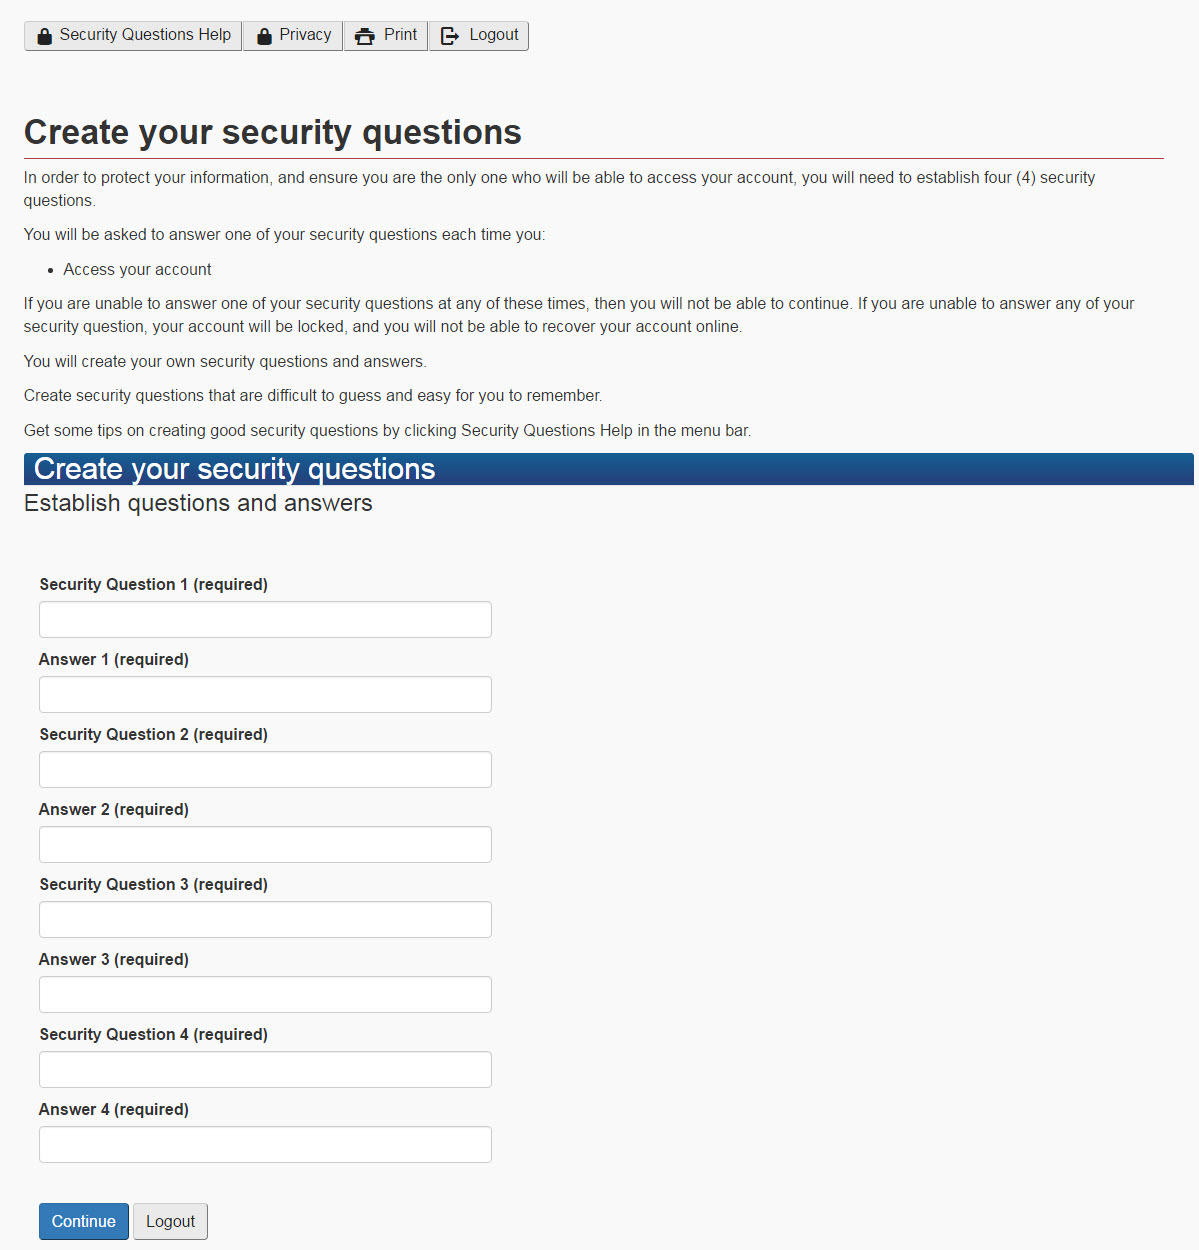 Imagen del formulario de preguntas de seguridad, como se describió anteriormente.